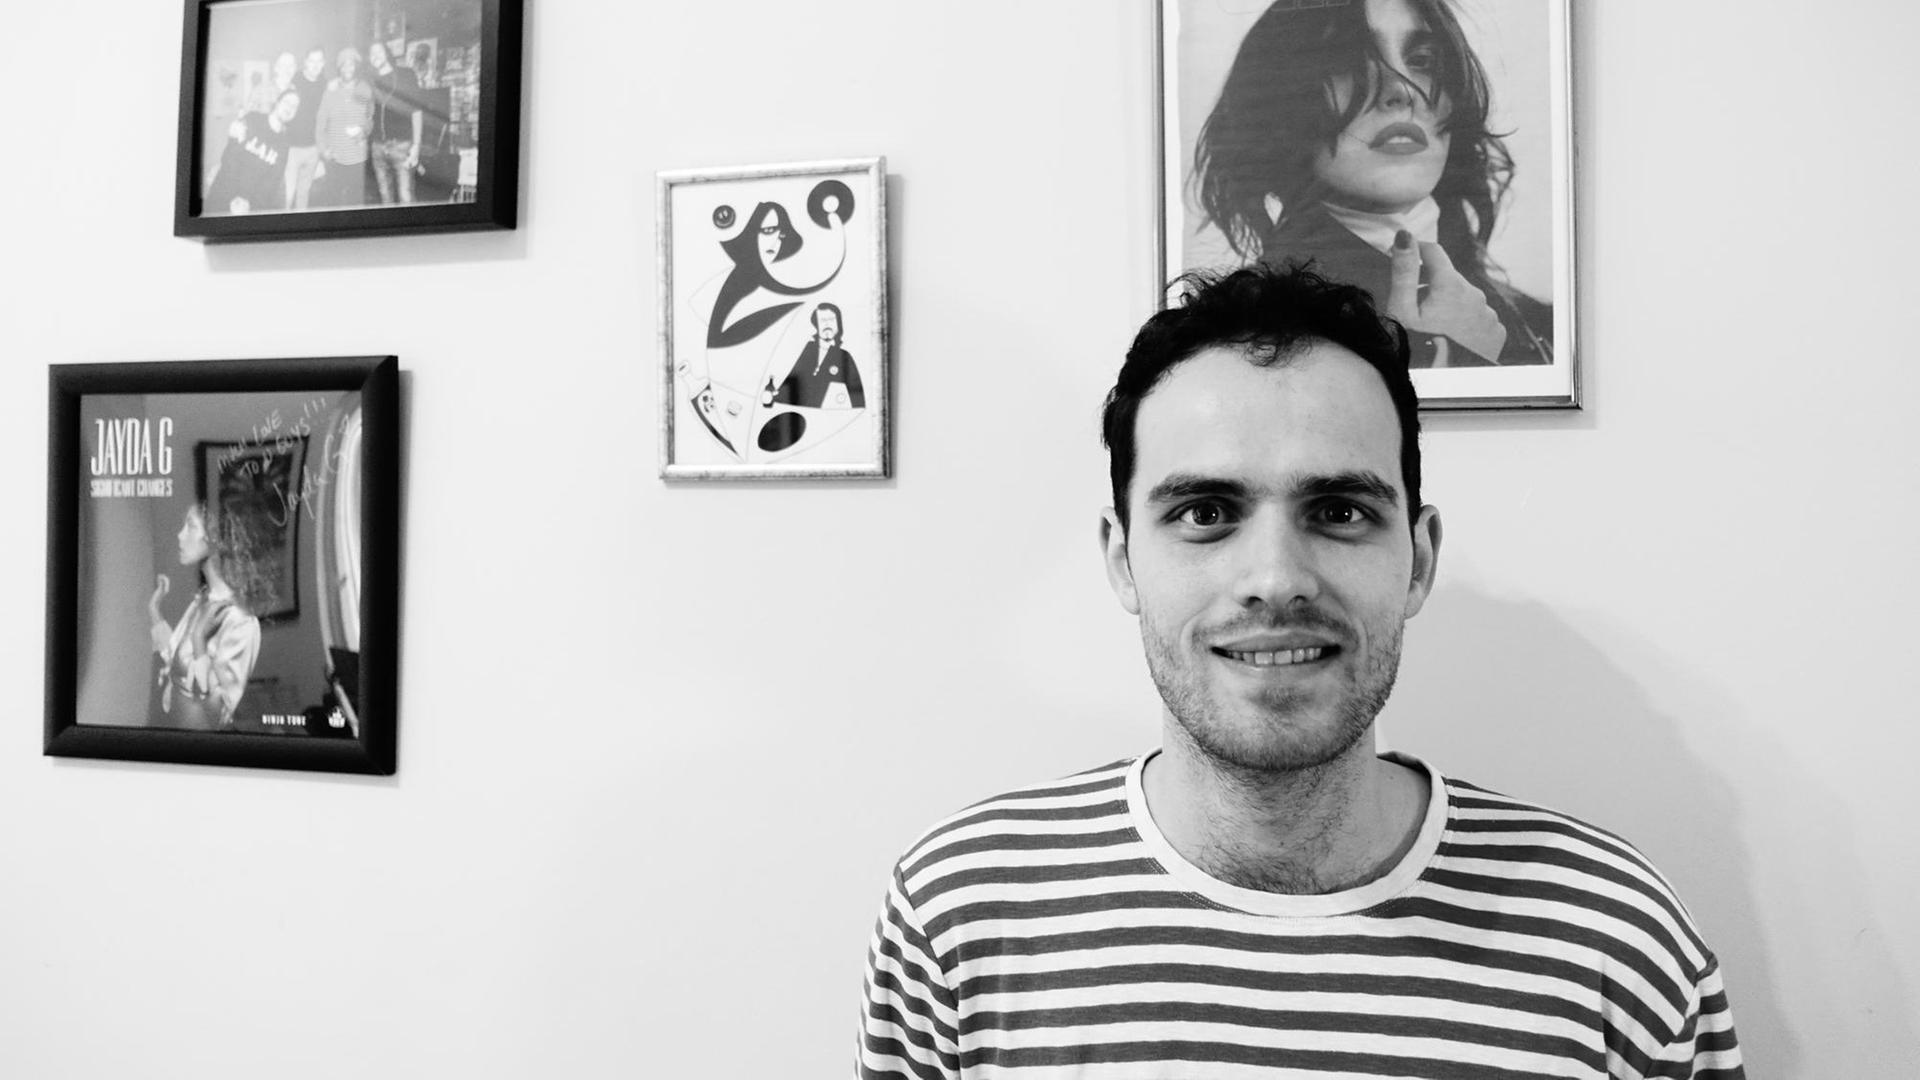 Der britische Musiker Jordan Rakei steht im gestreiften T-Shirt vor einer Wand mit Bilderrahmen